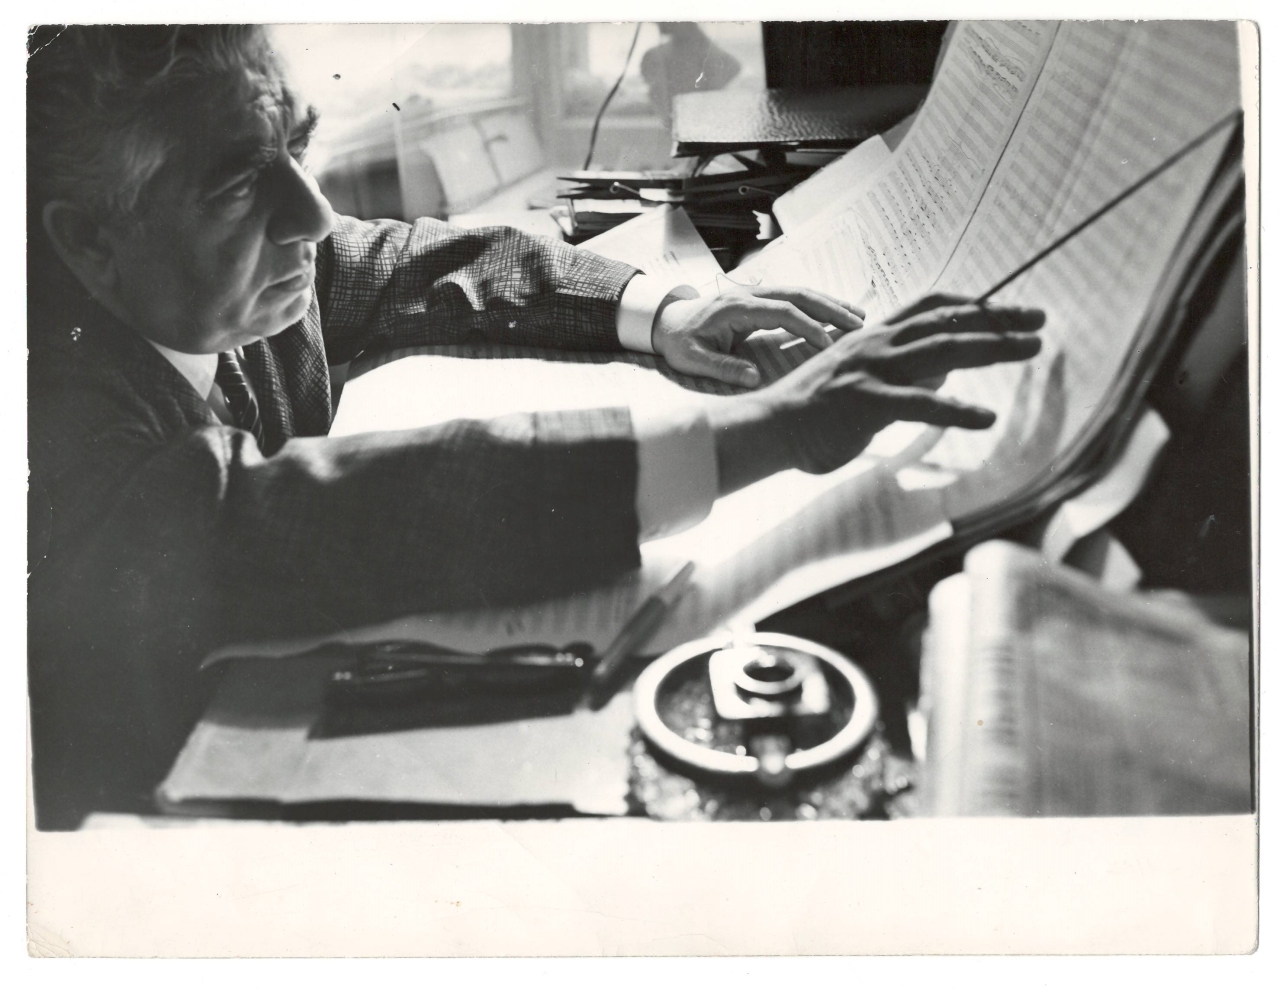 Լուսանկար. Ա.Խաչատրյանն իր մոսկովյան բնակարանի աշխատասենյակում՝  ստեղծագործական աշխատանքի  պահին: